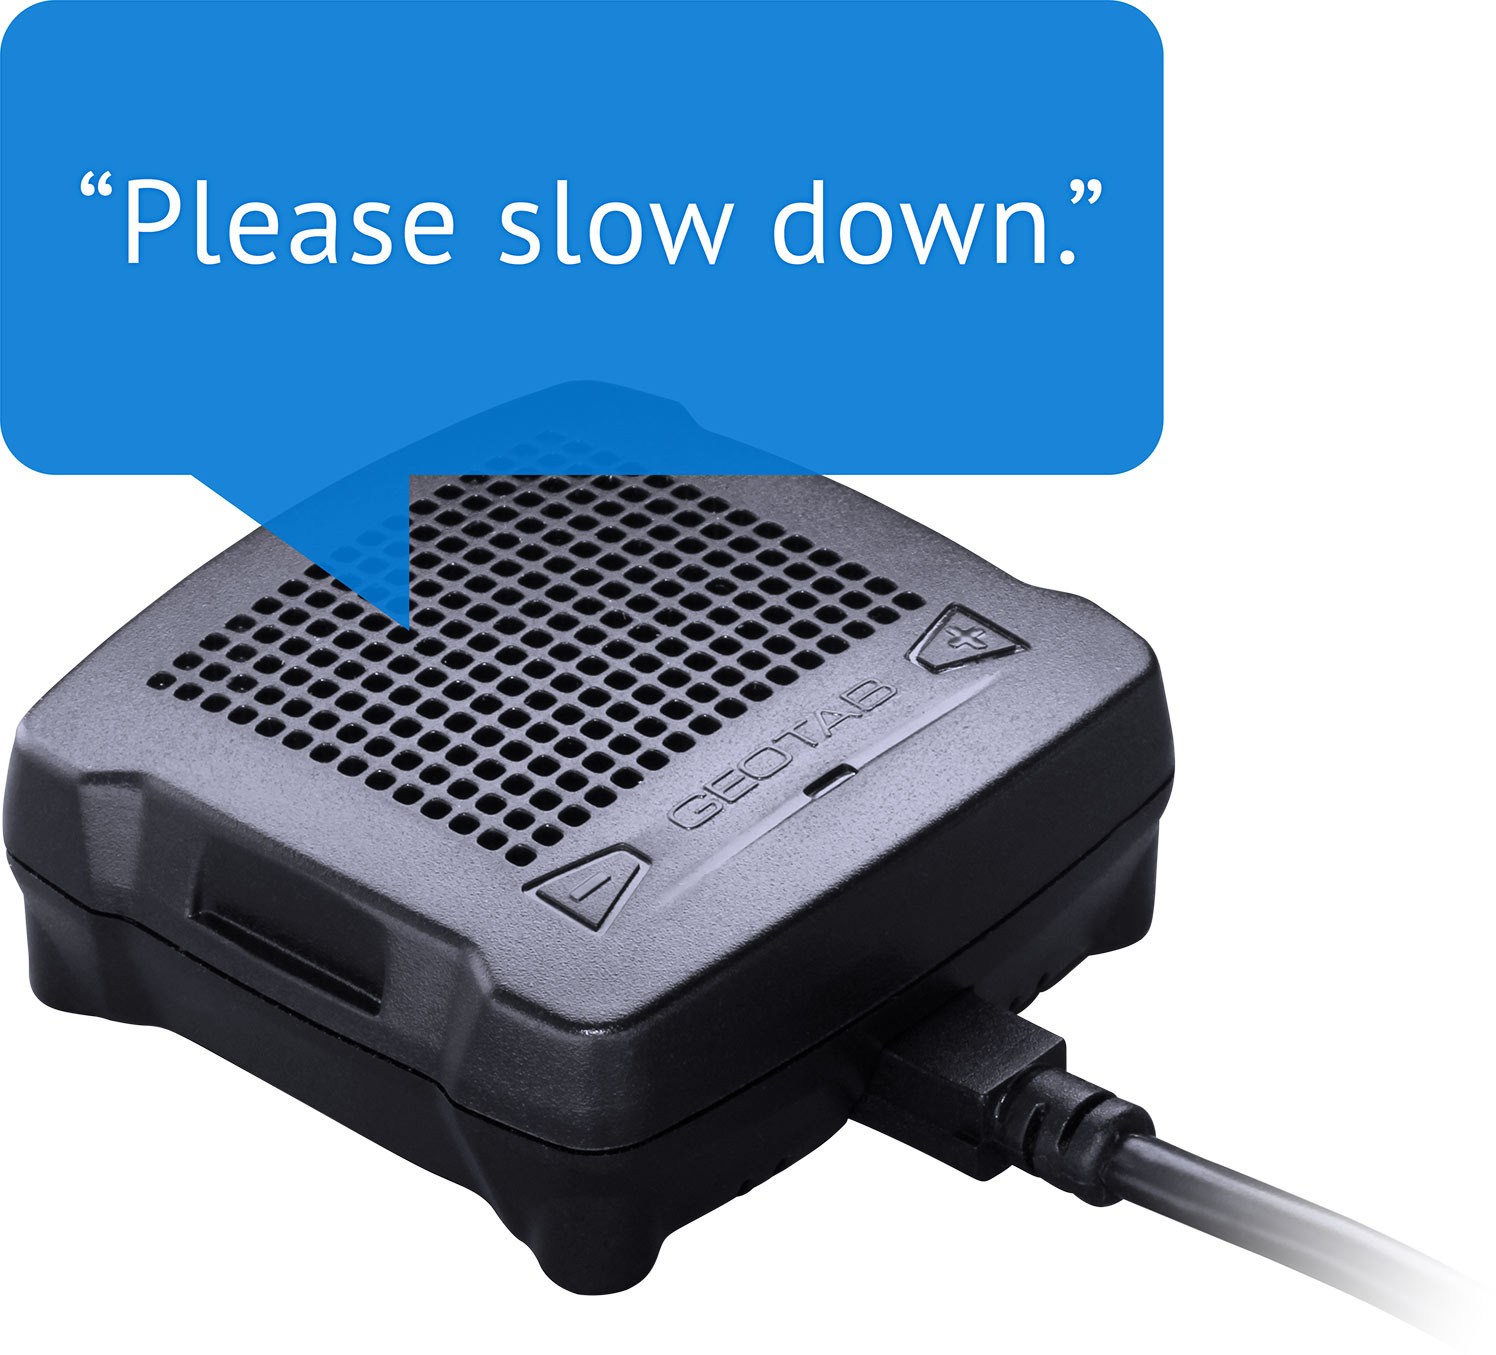 GO talk driver feedback saying, "Please slow down."